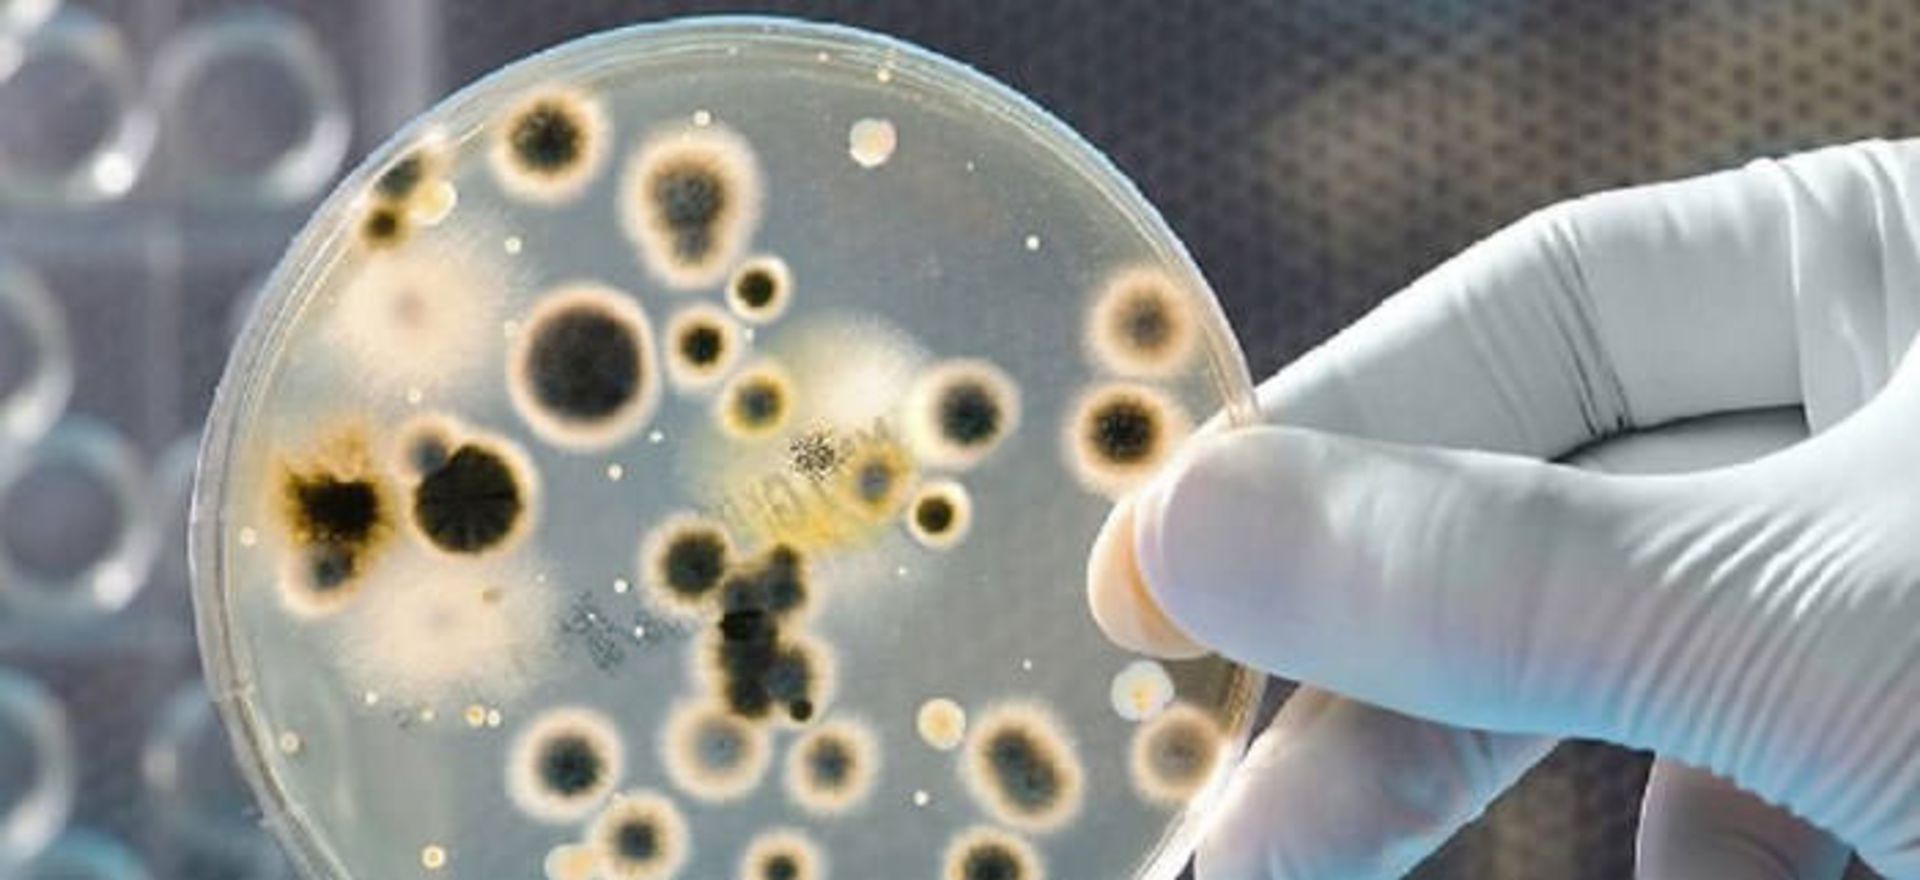 باکتری های فناناپذیر / Immortal bacteria